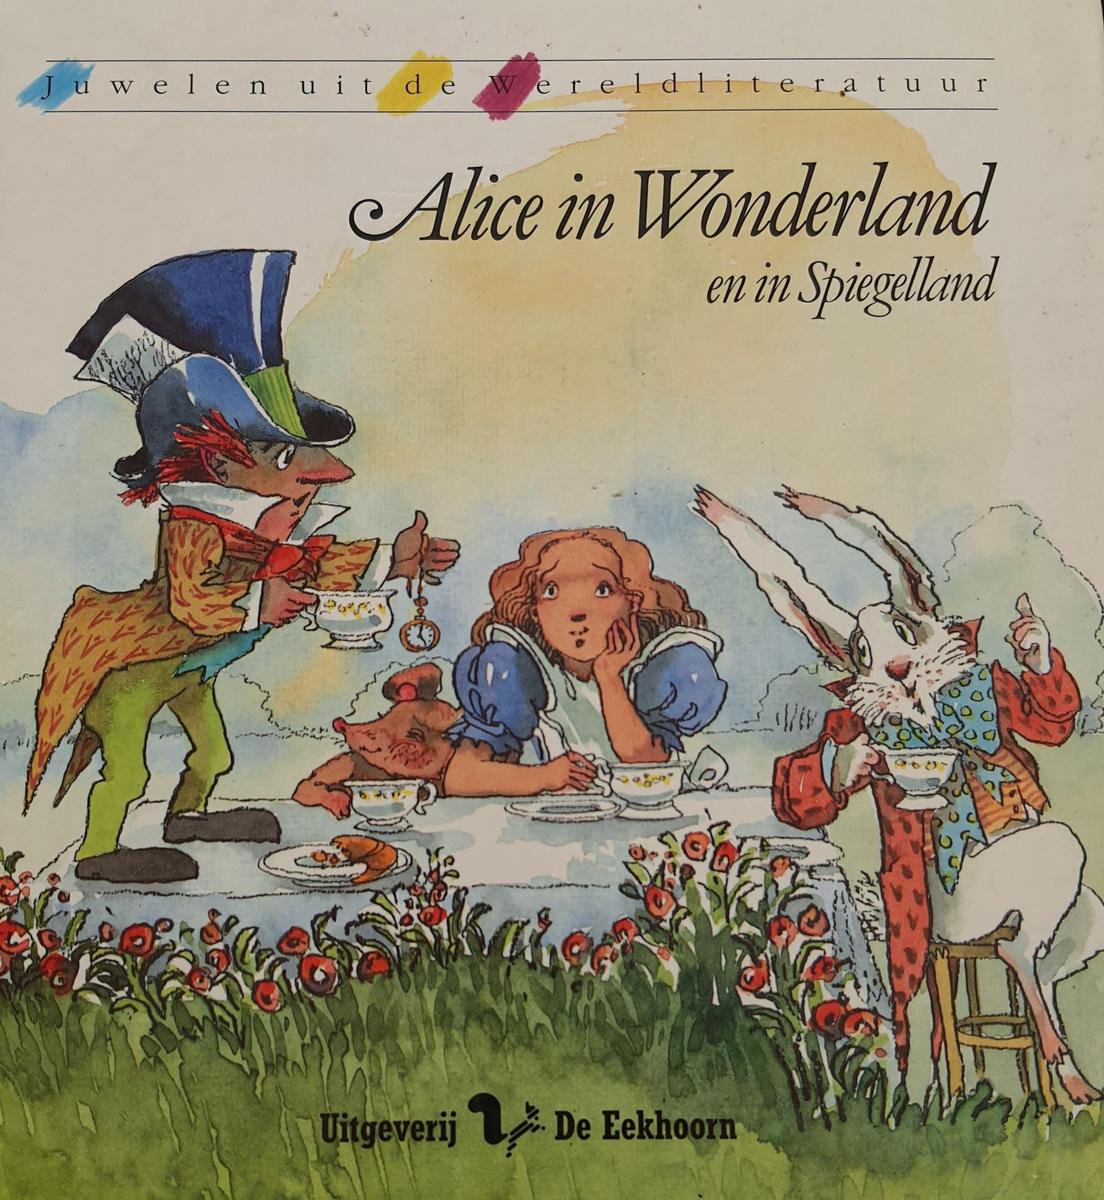 Alice in Wonderland en in Spiegelland / Juwelen uit de wereldliteratuur